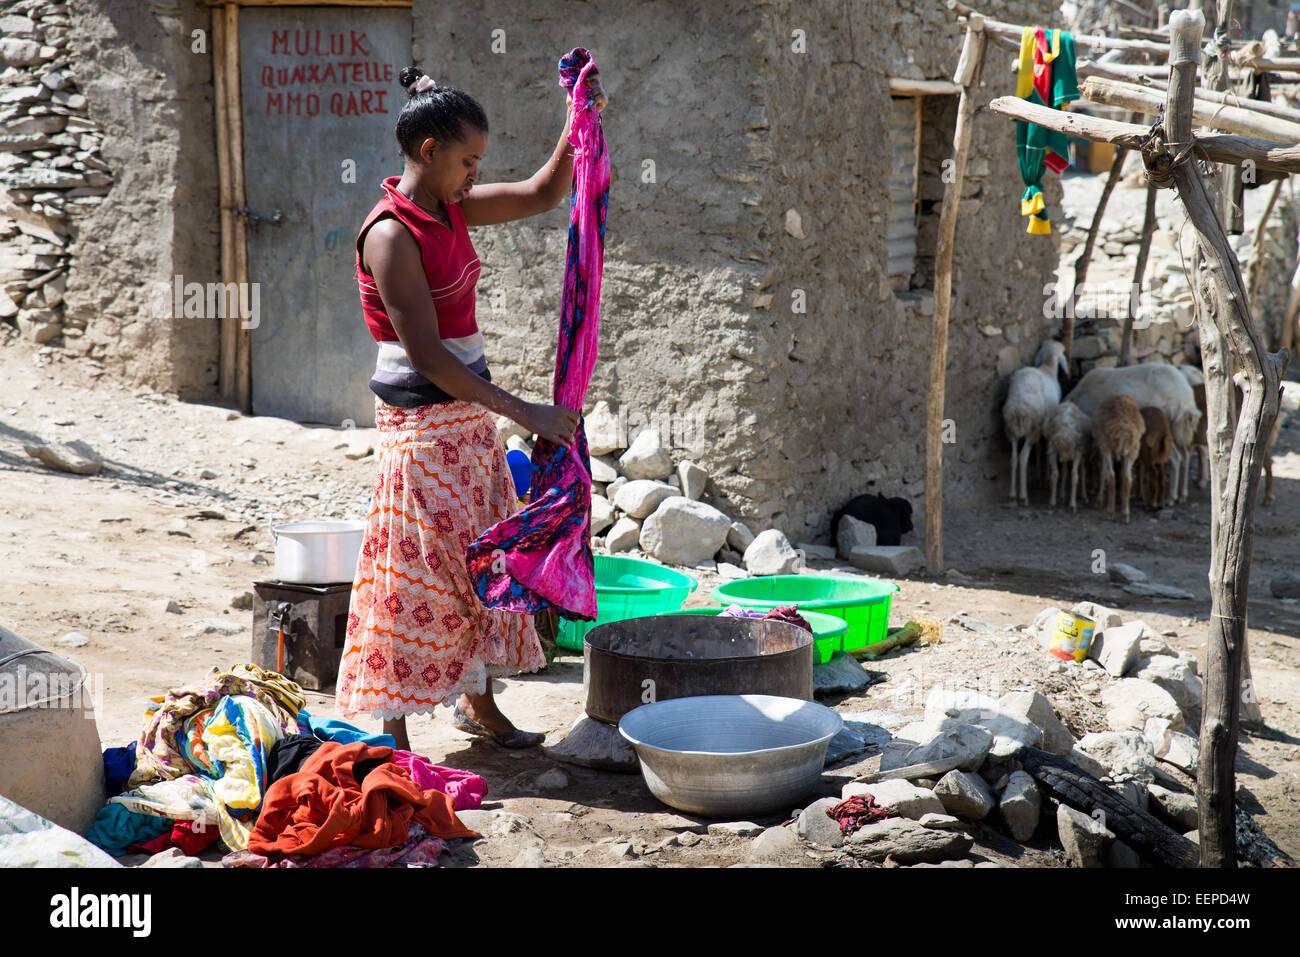 Donna locale lavare i vestiti a mano, l'Etiopia settentrionale, Africa Foto  stock - Alamy